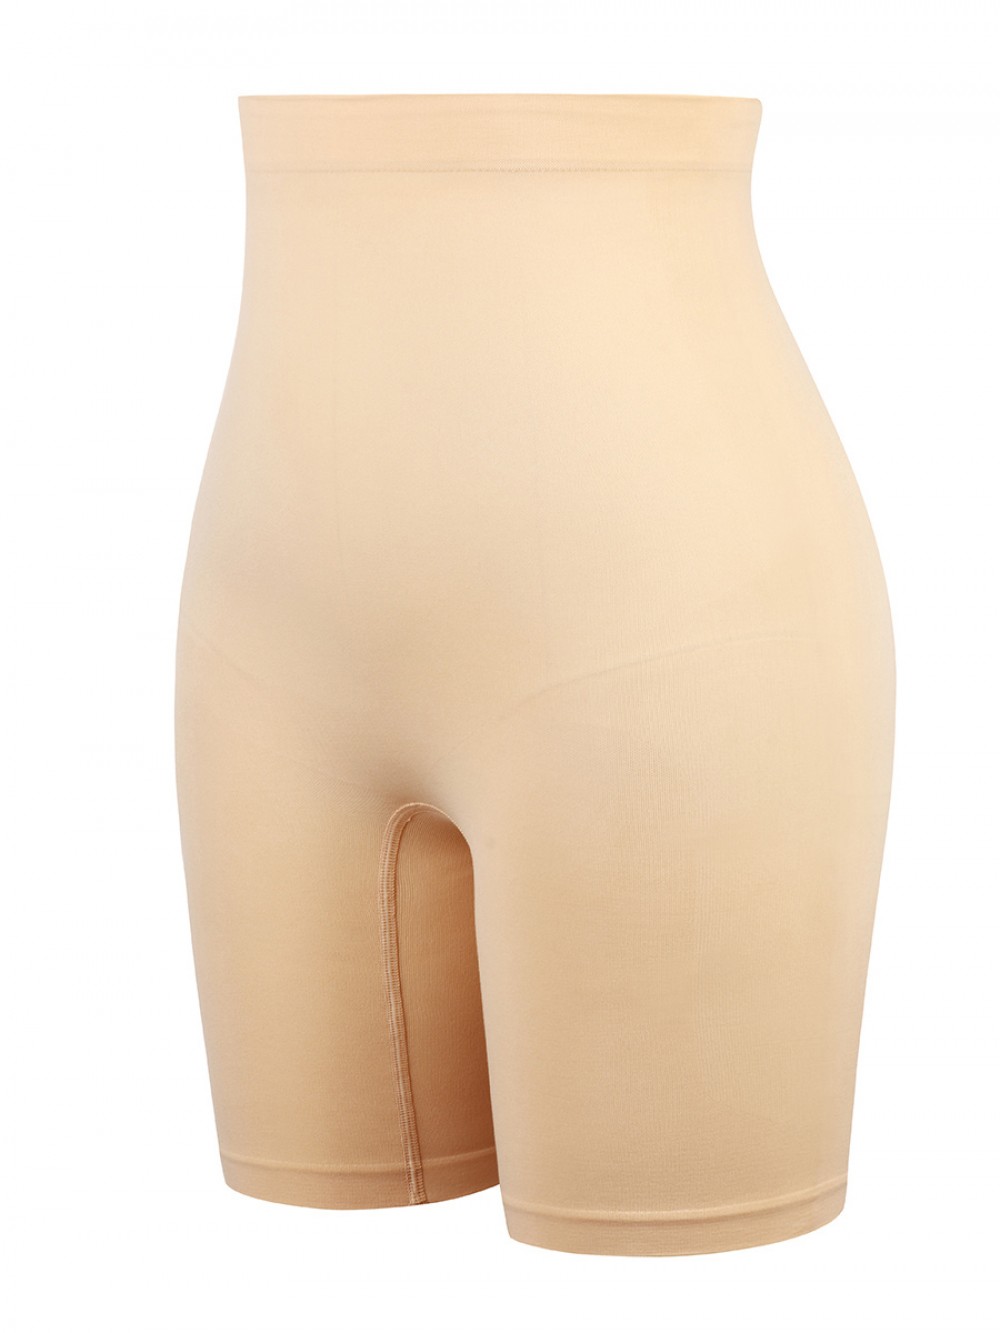 Apricot Large Size Seamless Shapewear Shorts Hourglass Figure